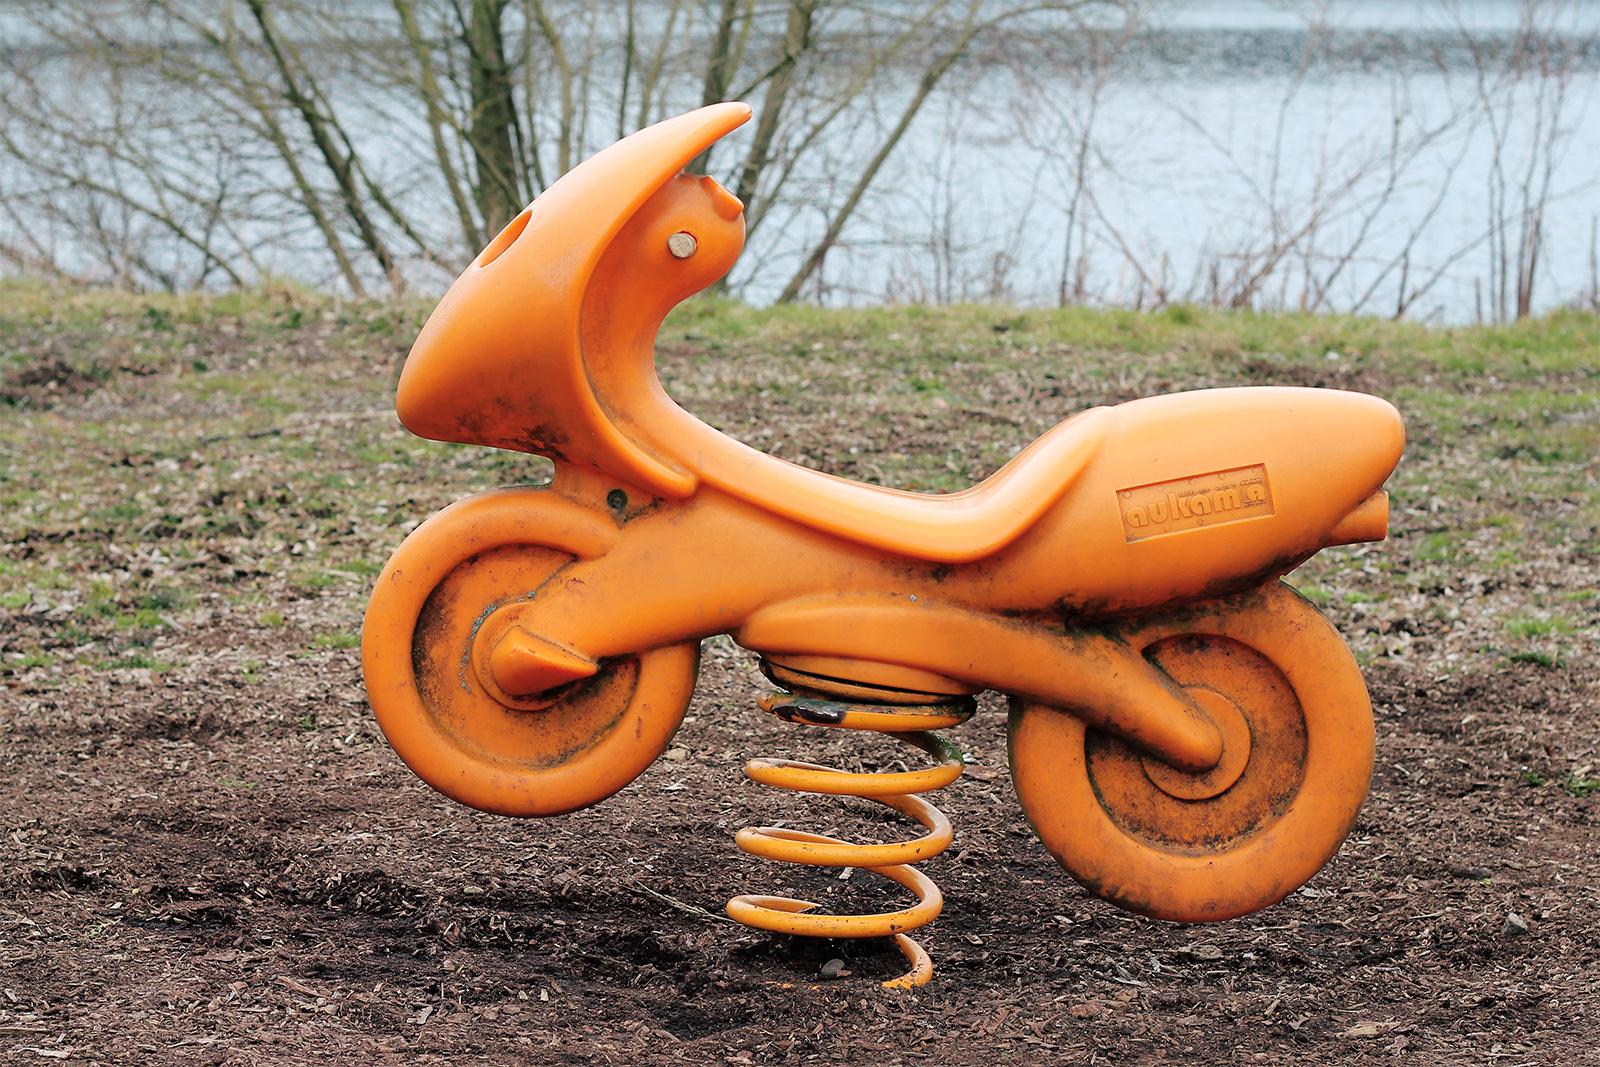 Ein Kinderspielzeug zum Draufsetzen und Wippen in Form eines orangenen Motorrads